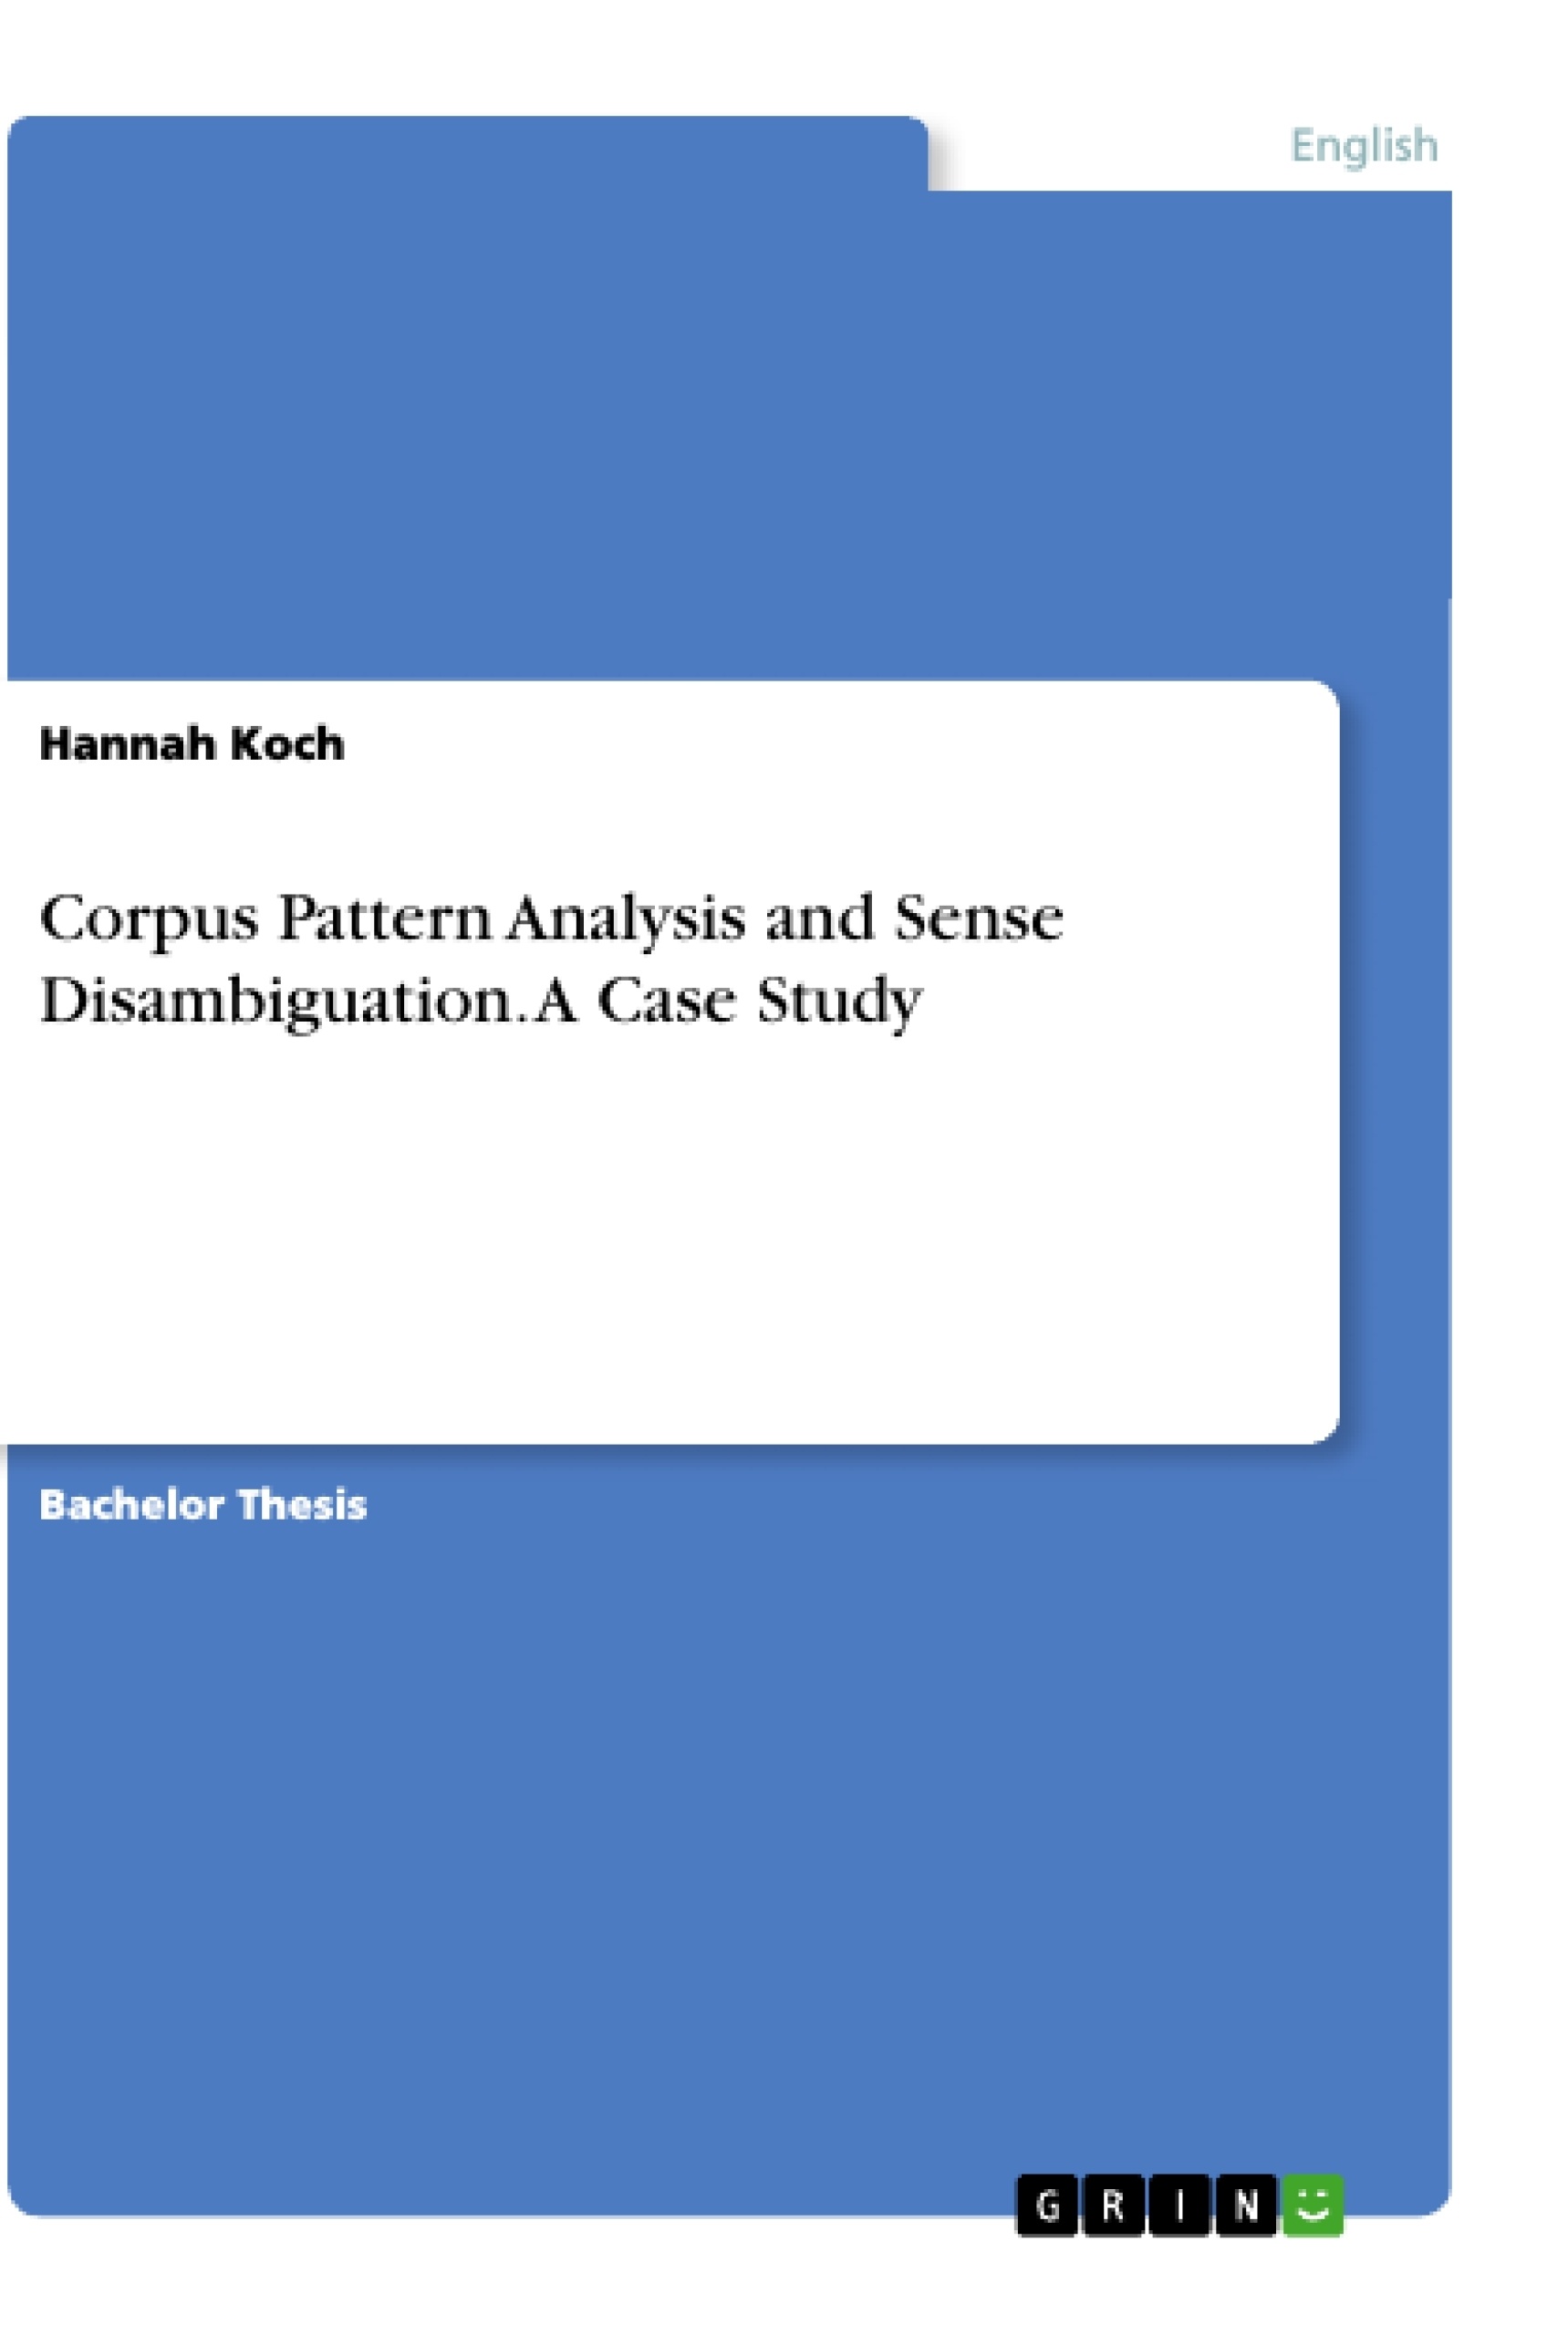 Title: Corpus Pattern Analysis and Sense Disambiguation. A Case Study